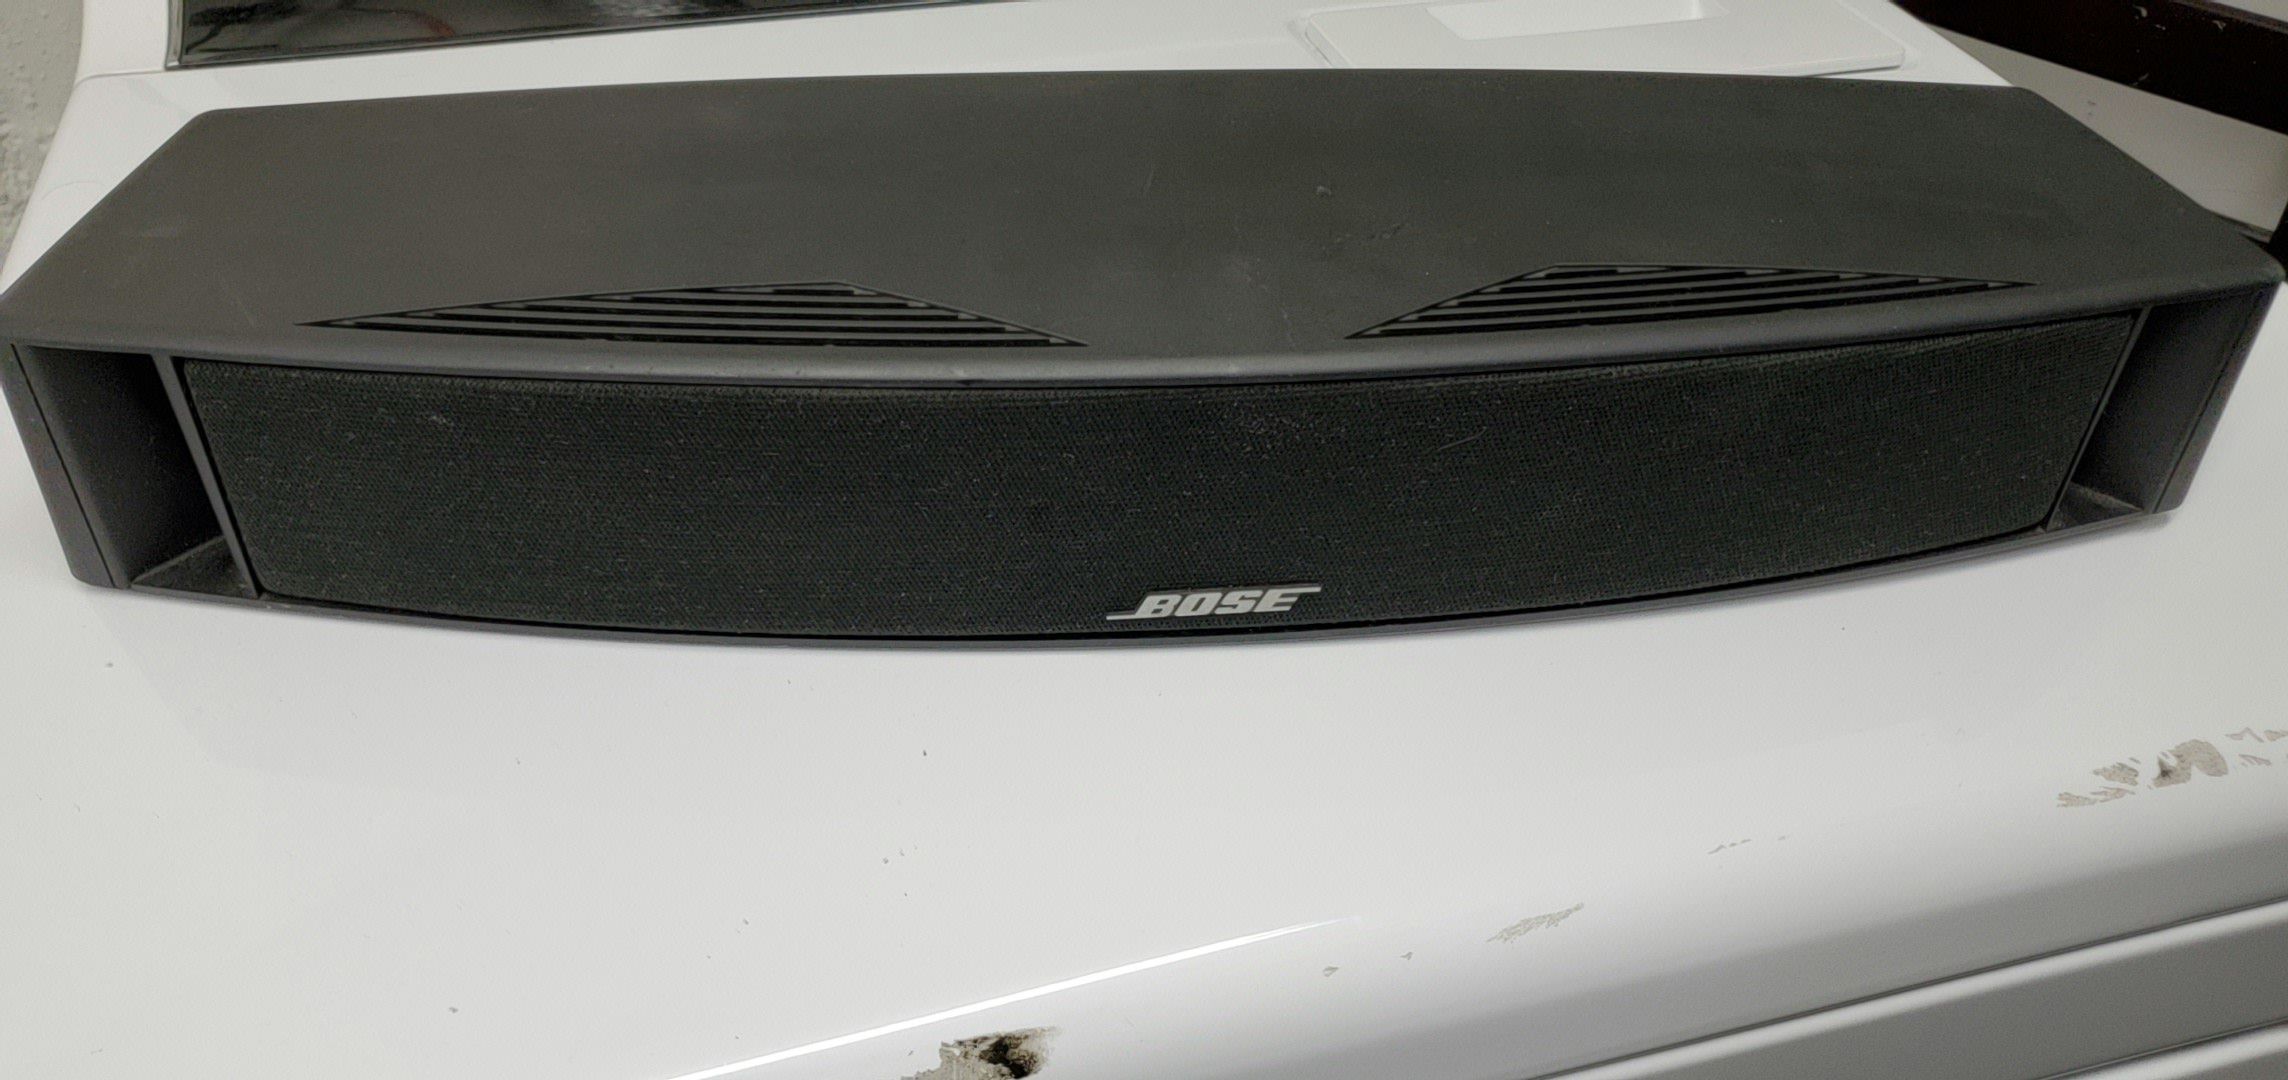 Bose vcs-10 center channel speaker